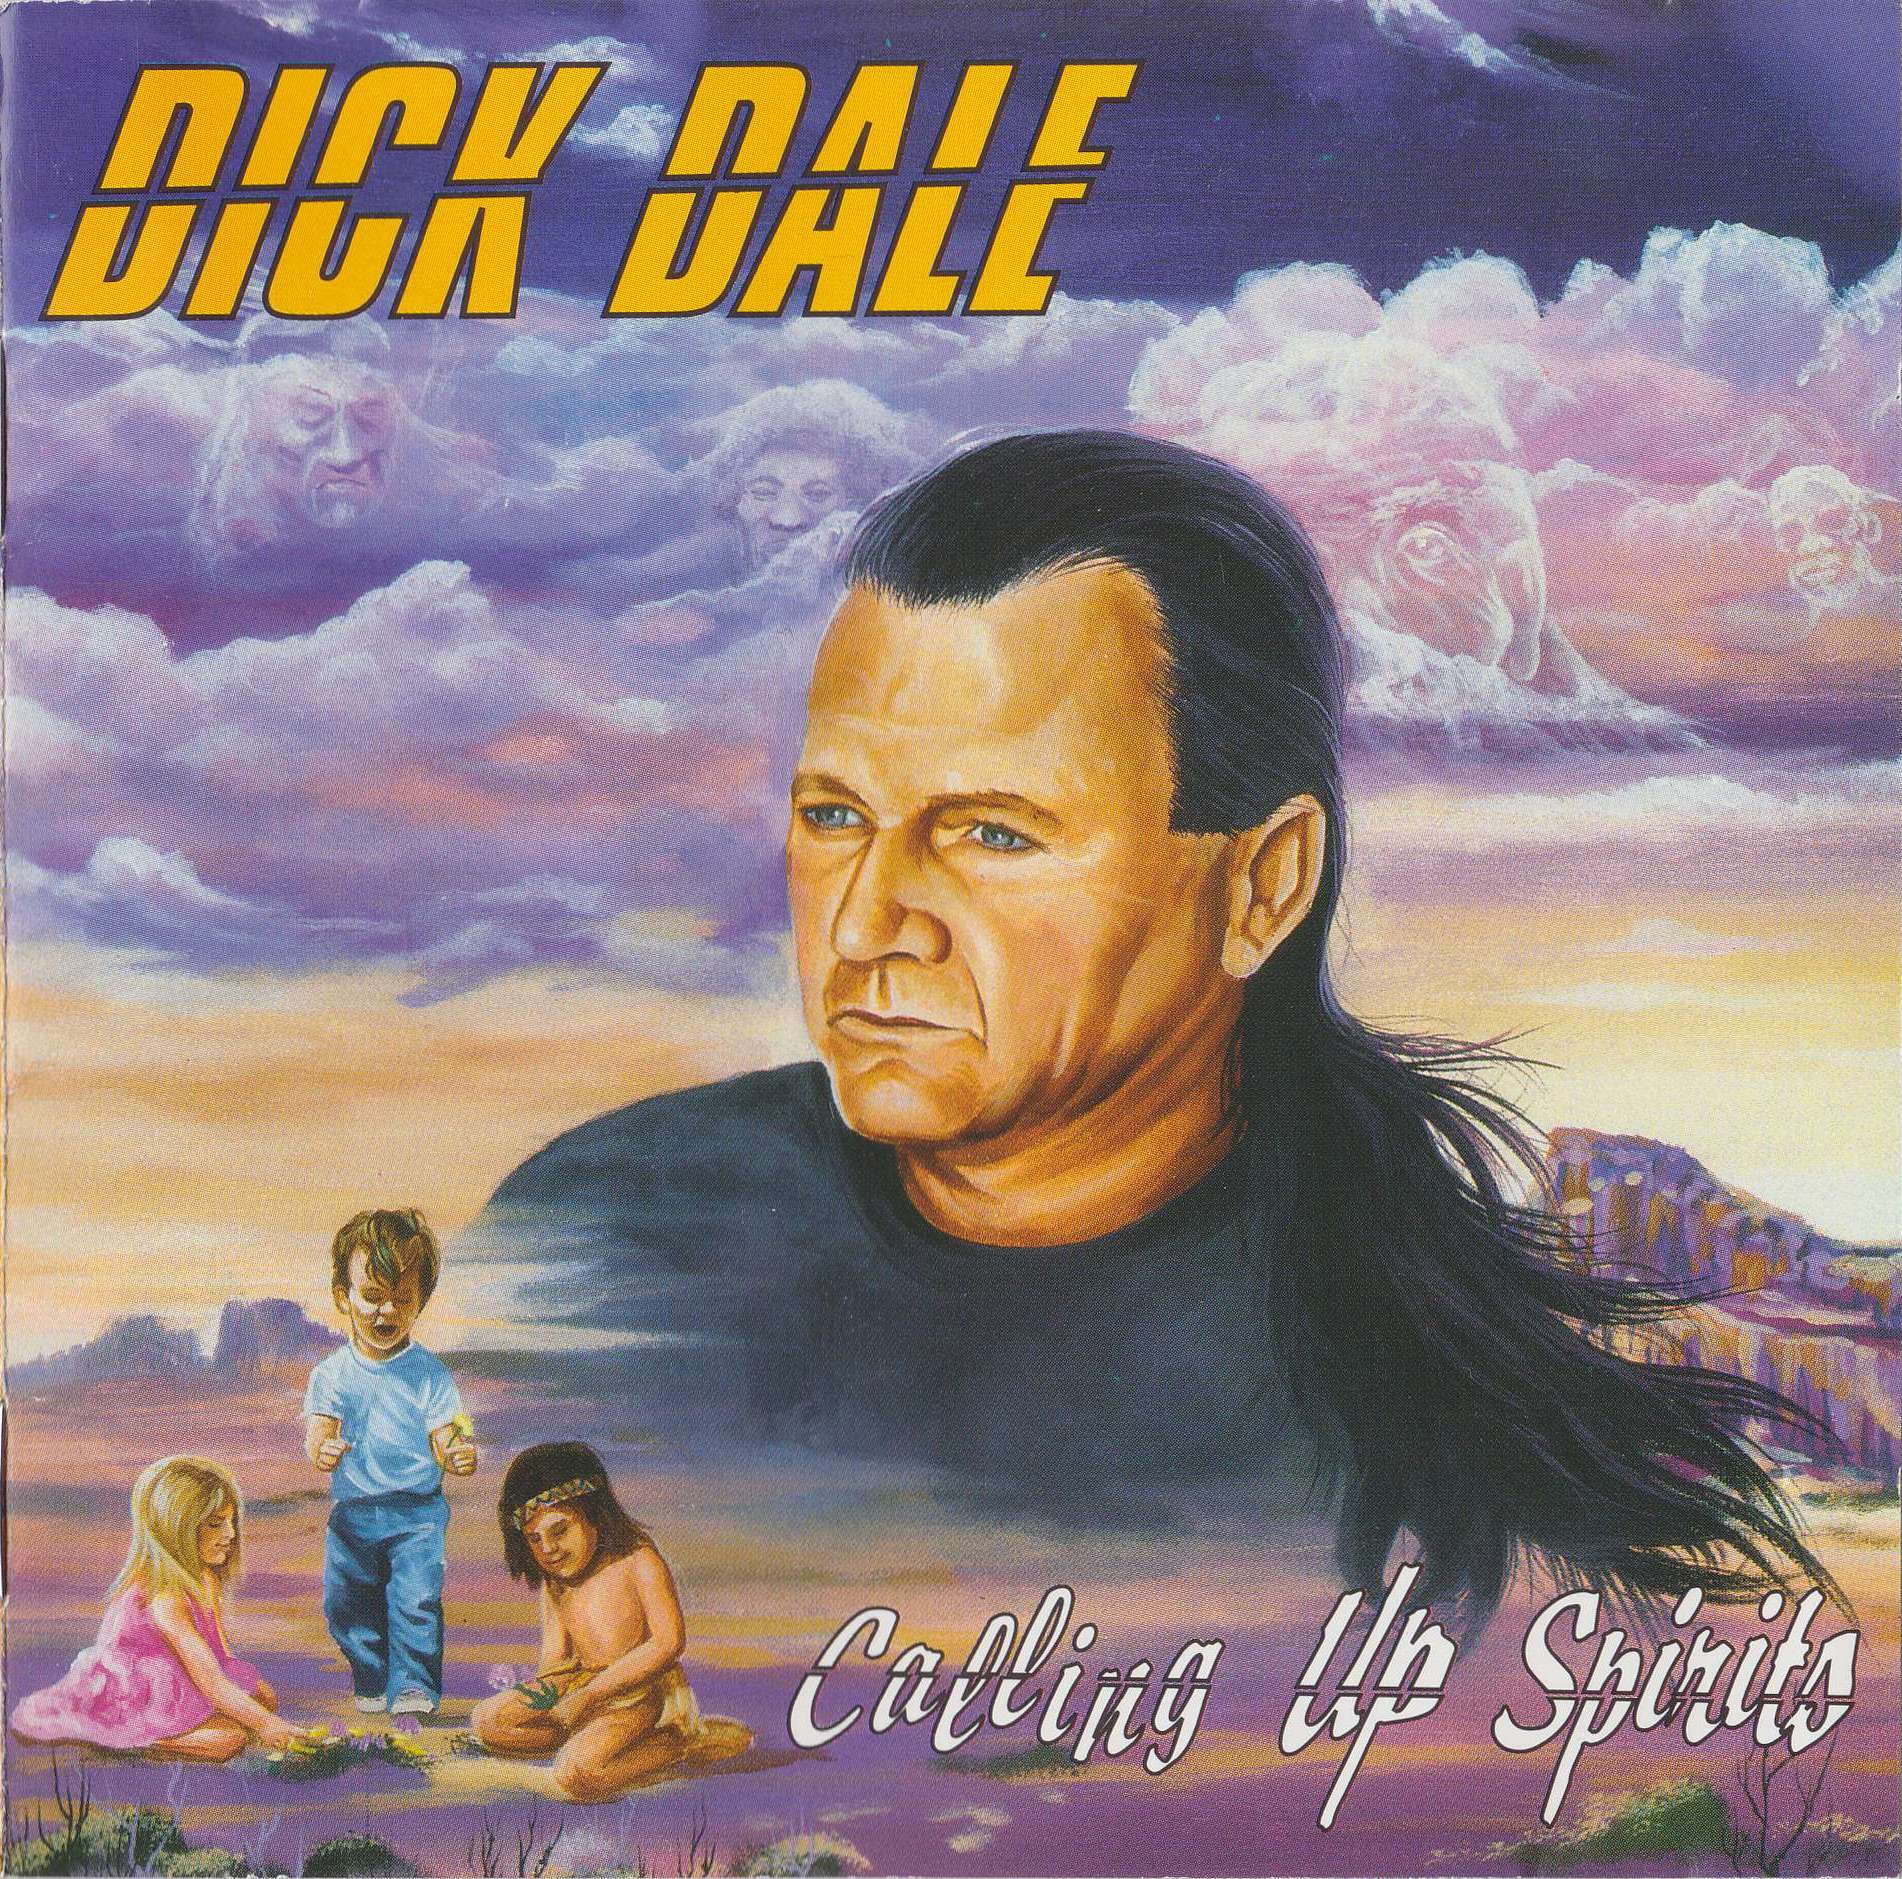 Dick de. Dick Dale calling up Spirits 1996 CD. Dick Dale - Tribal Thunder (1993).